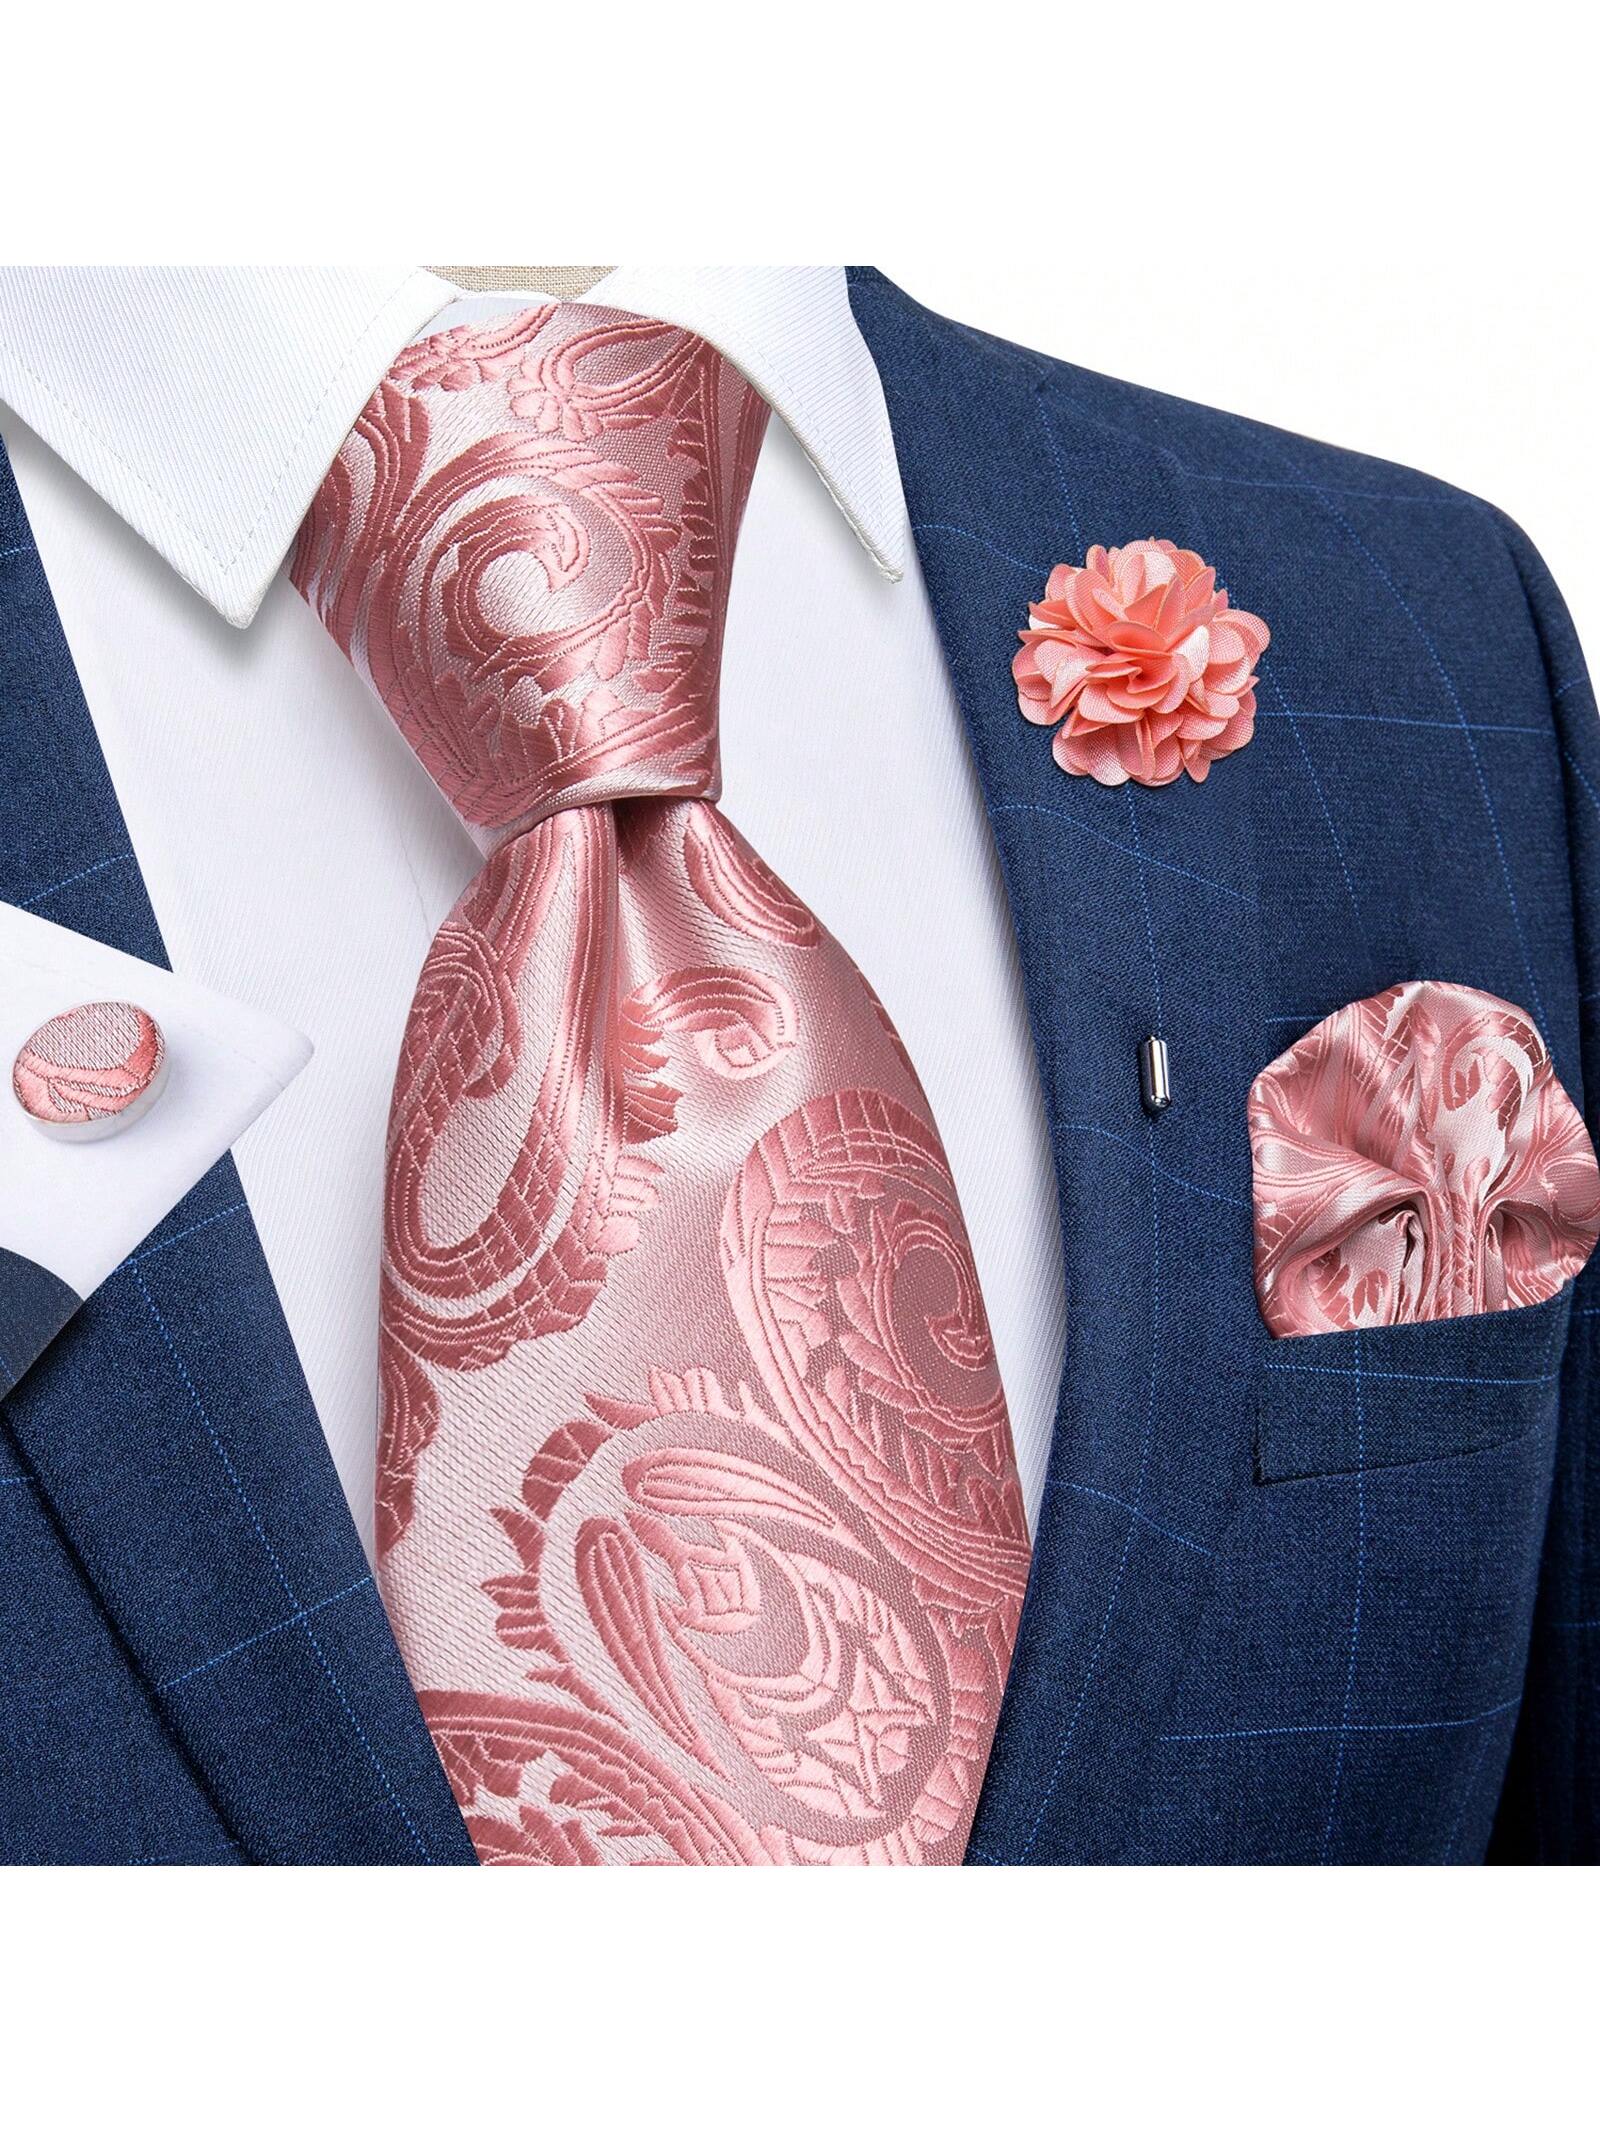 dibangu мужской галстук шелковый красный синий однотонный свадебный галстук карманные квадратные запонки зажим набор пейсли желтый DiBanGu мужские галстуки, розовый